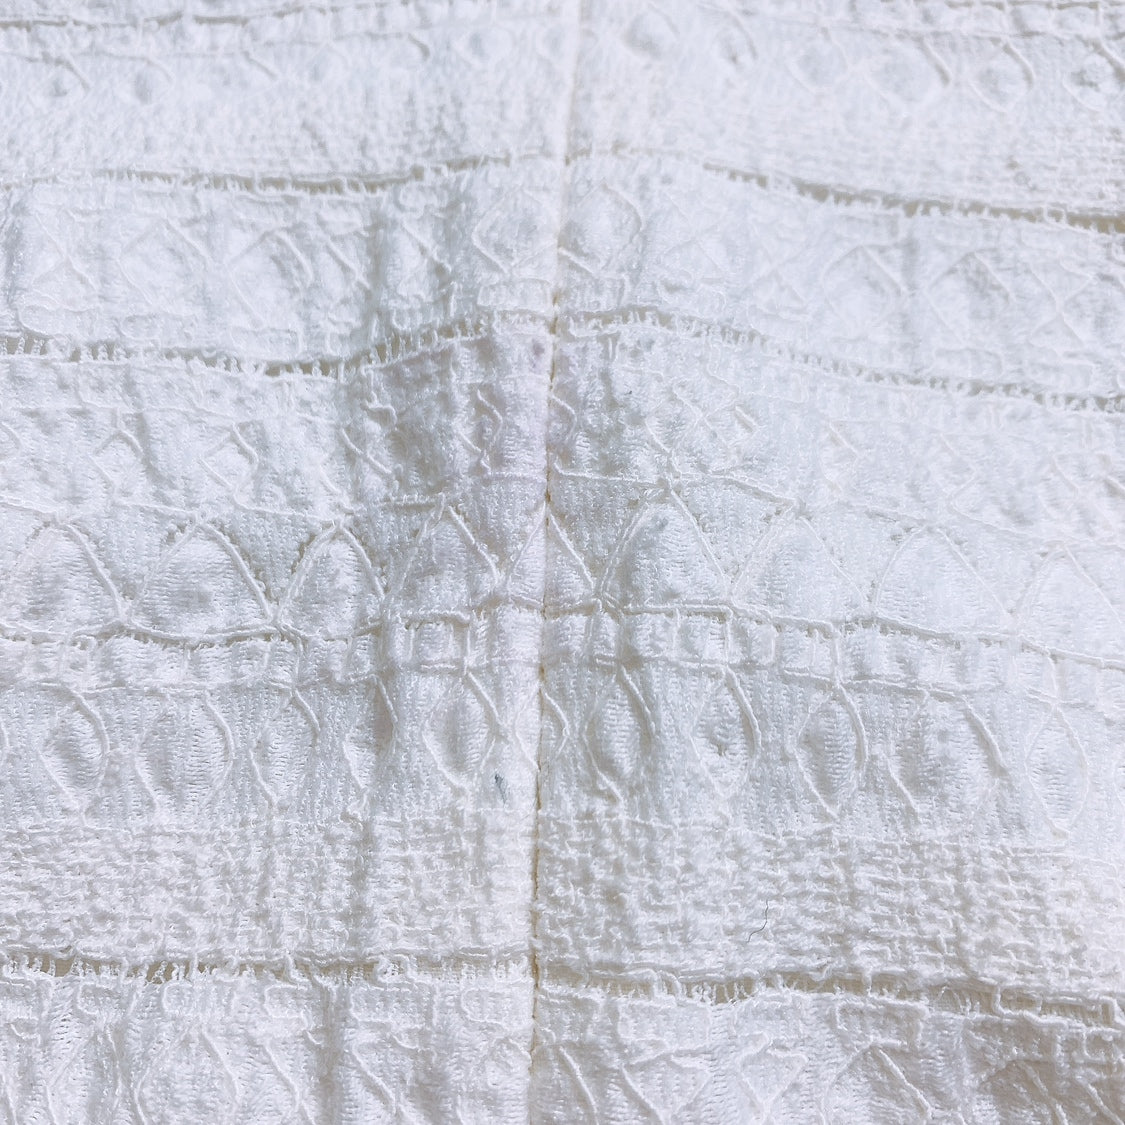 レディースS 36 Demi-Luxe スカート 無地 シンプル カジュアル 白 ホワイト ポリエステル コットン ミニスカート デミルクス 【15203】